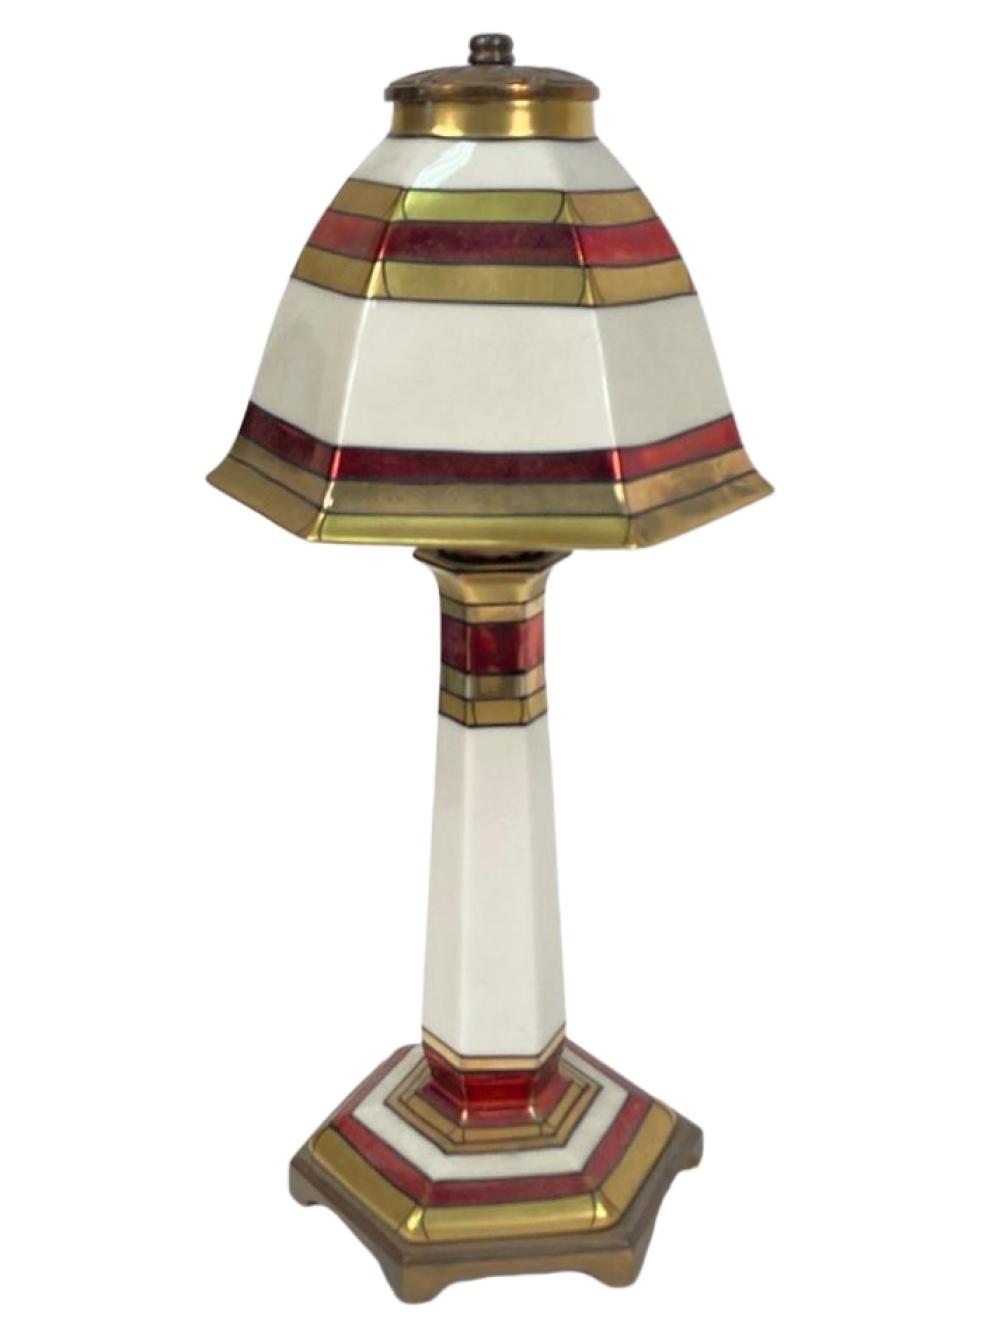 LENOX ART DECO PORCELAIN LAMP WITH 2f3354